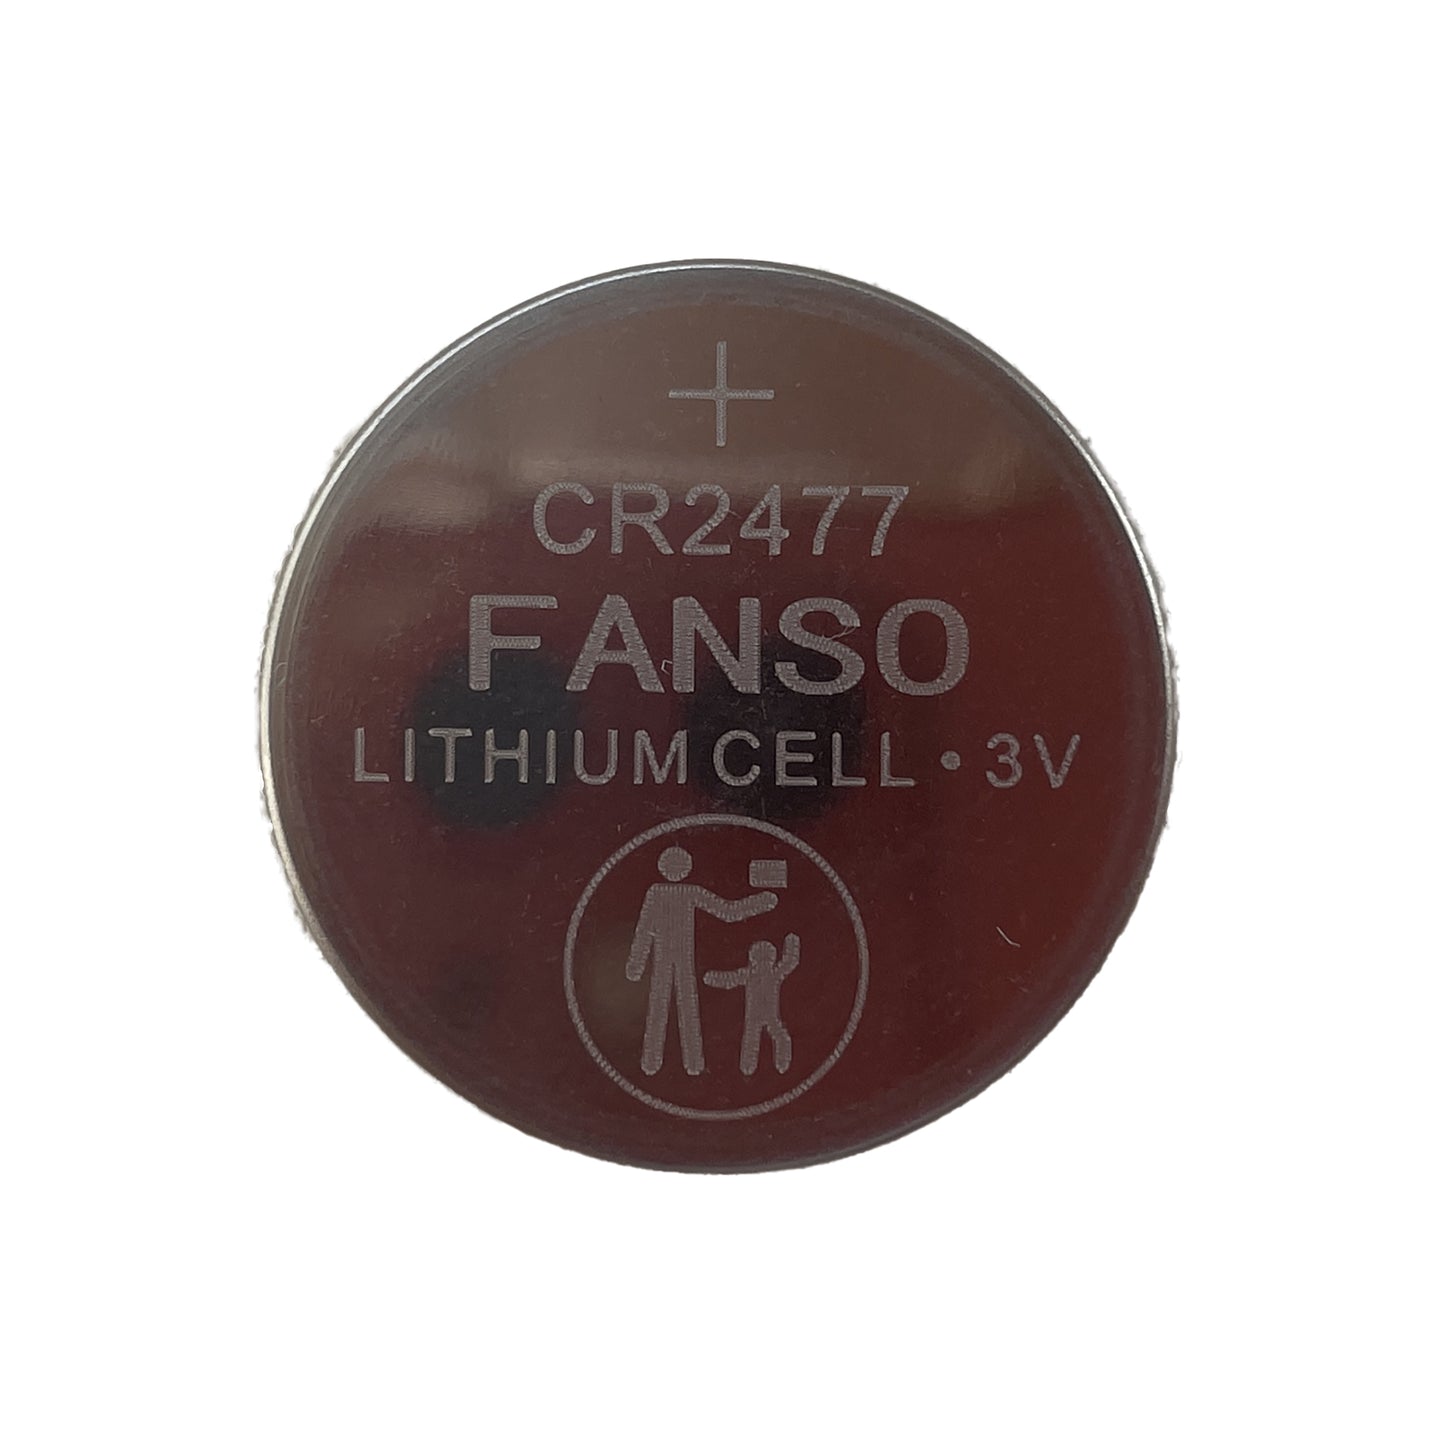 FAN-CR2477 - батарейка литиевая Fanso, тип: CR2477